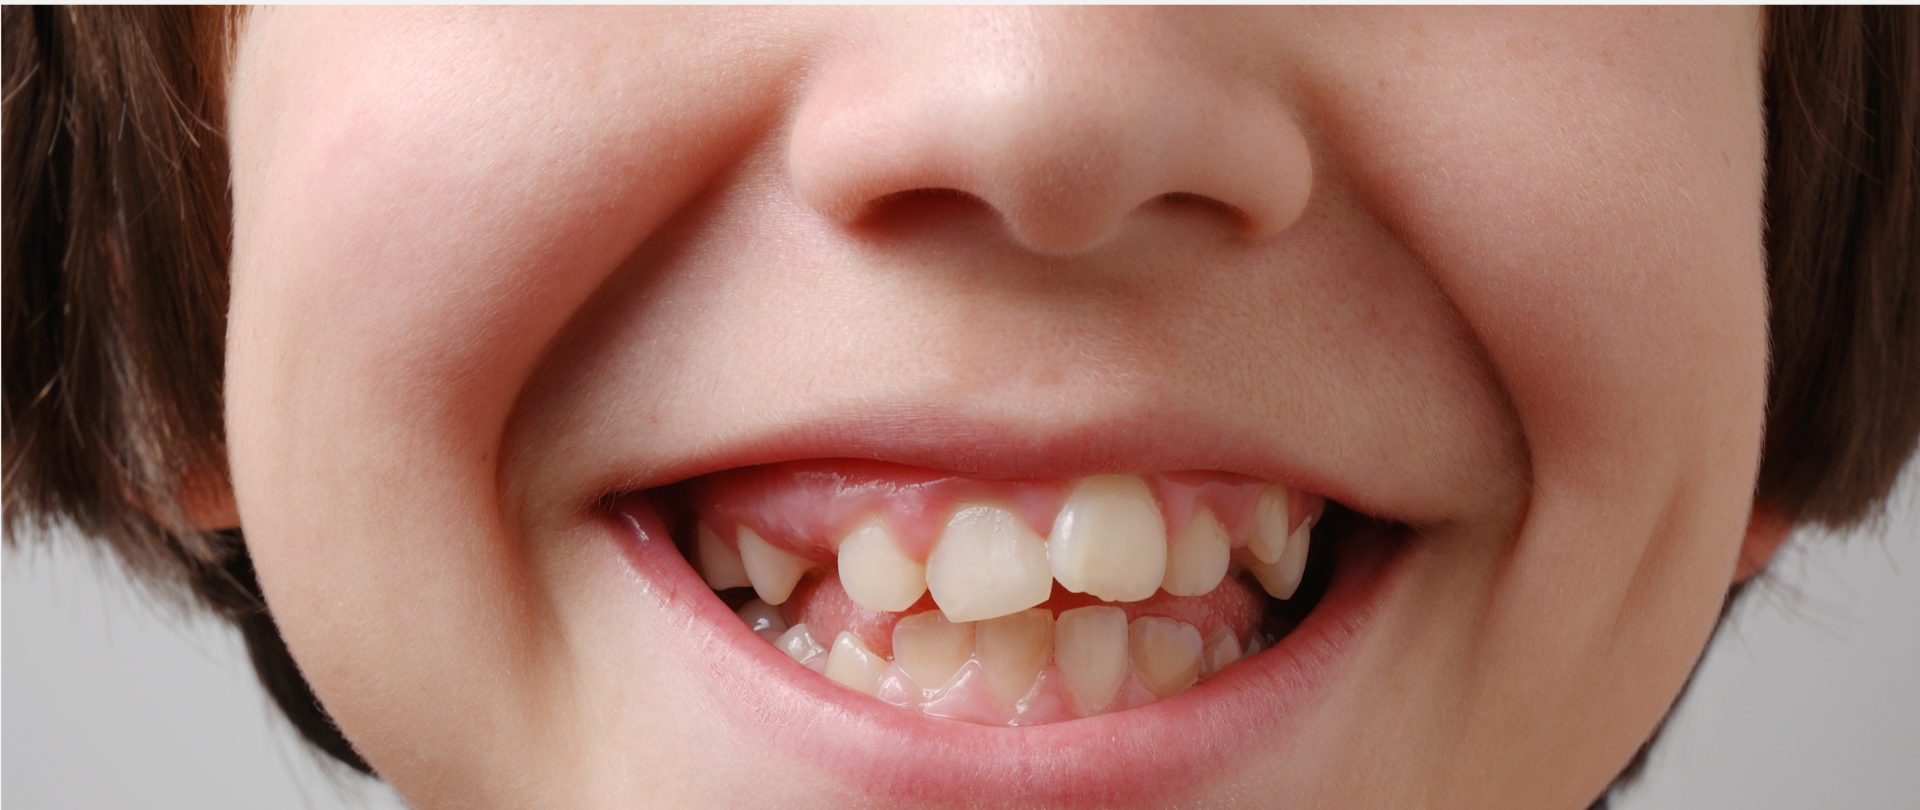 Młody chłopiec z krzywymi zębami uśmiecha się przed założeniem aparatu ortodontycznego.